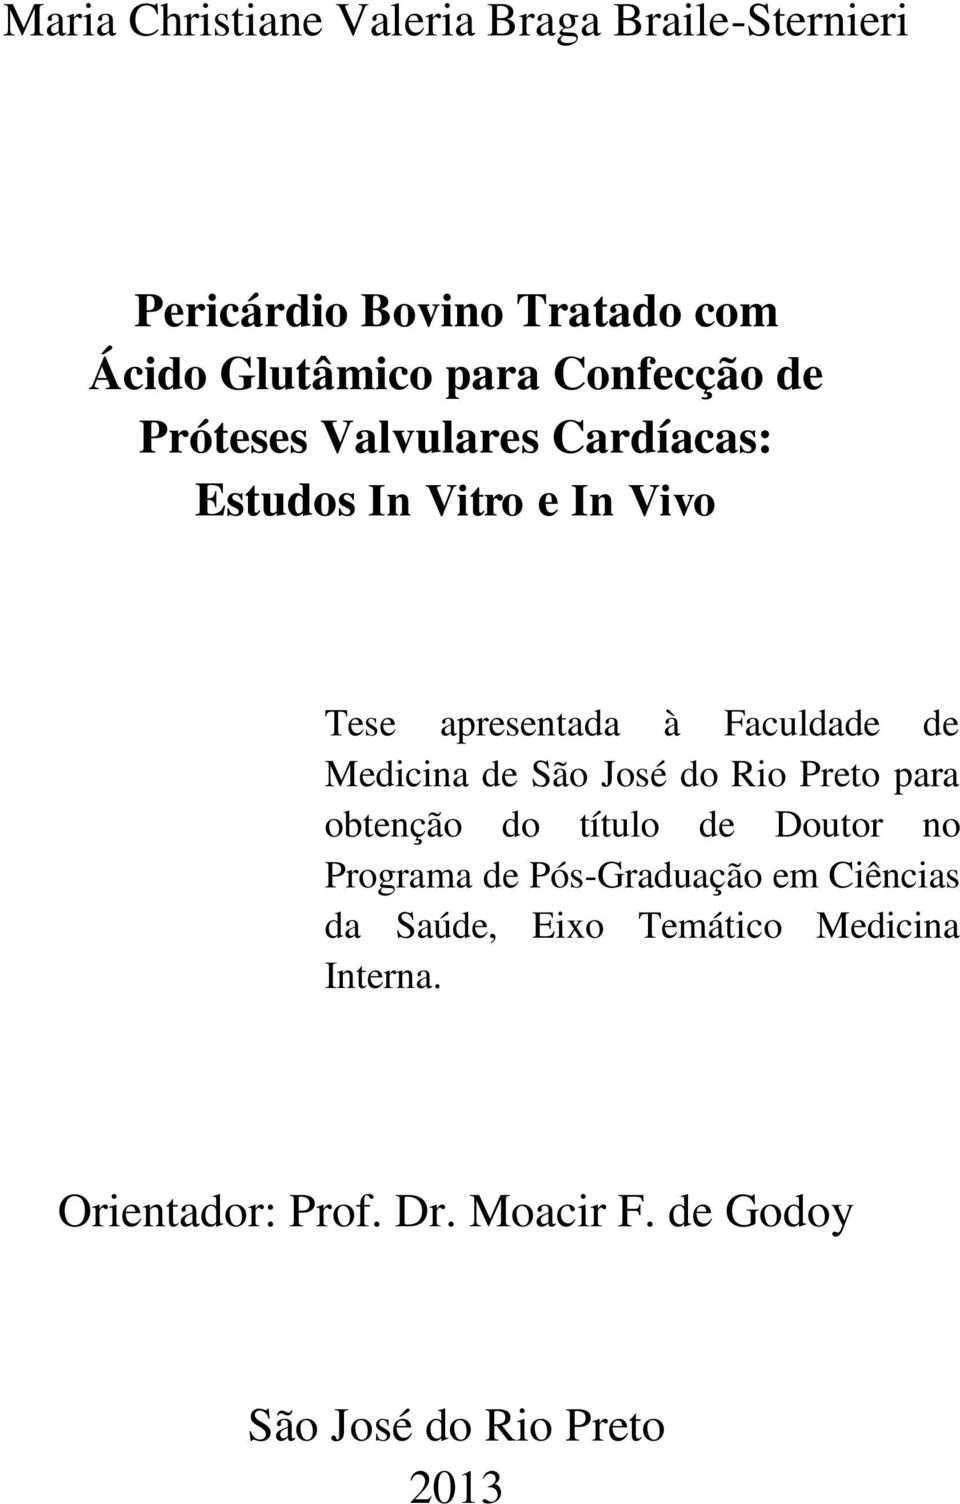 Medicina de São José do Rio Preto para obtenção do título de Doutor no Programa de Pós-Graduação em